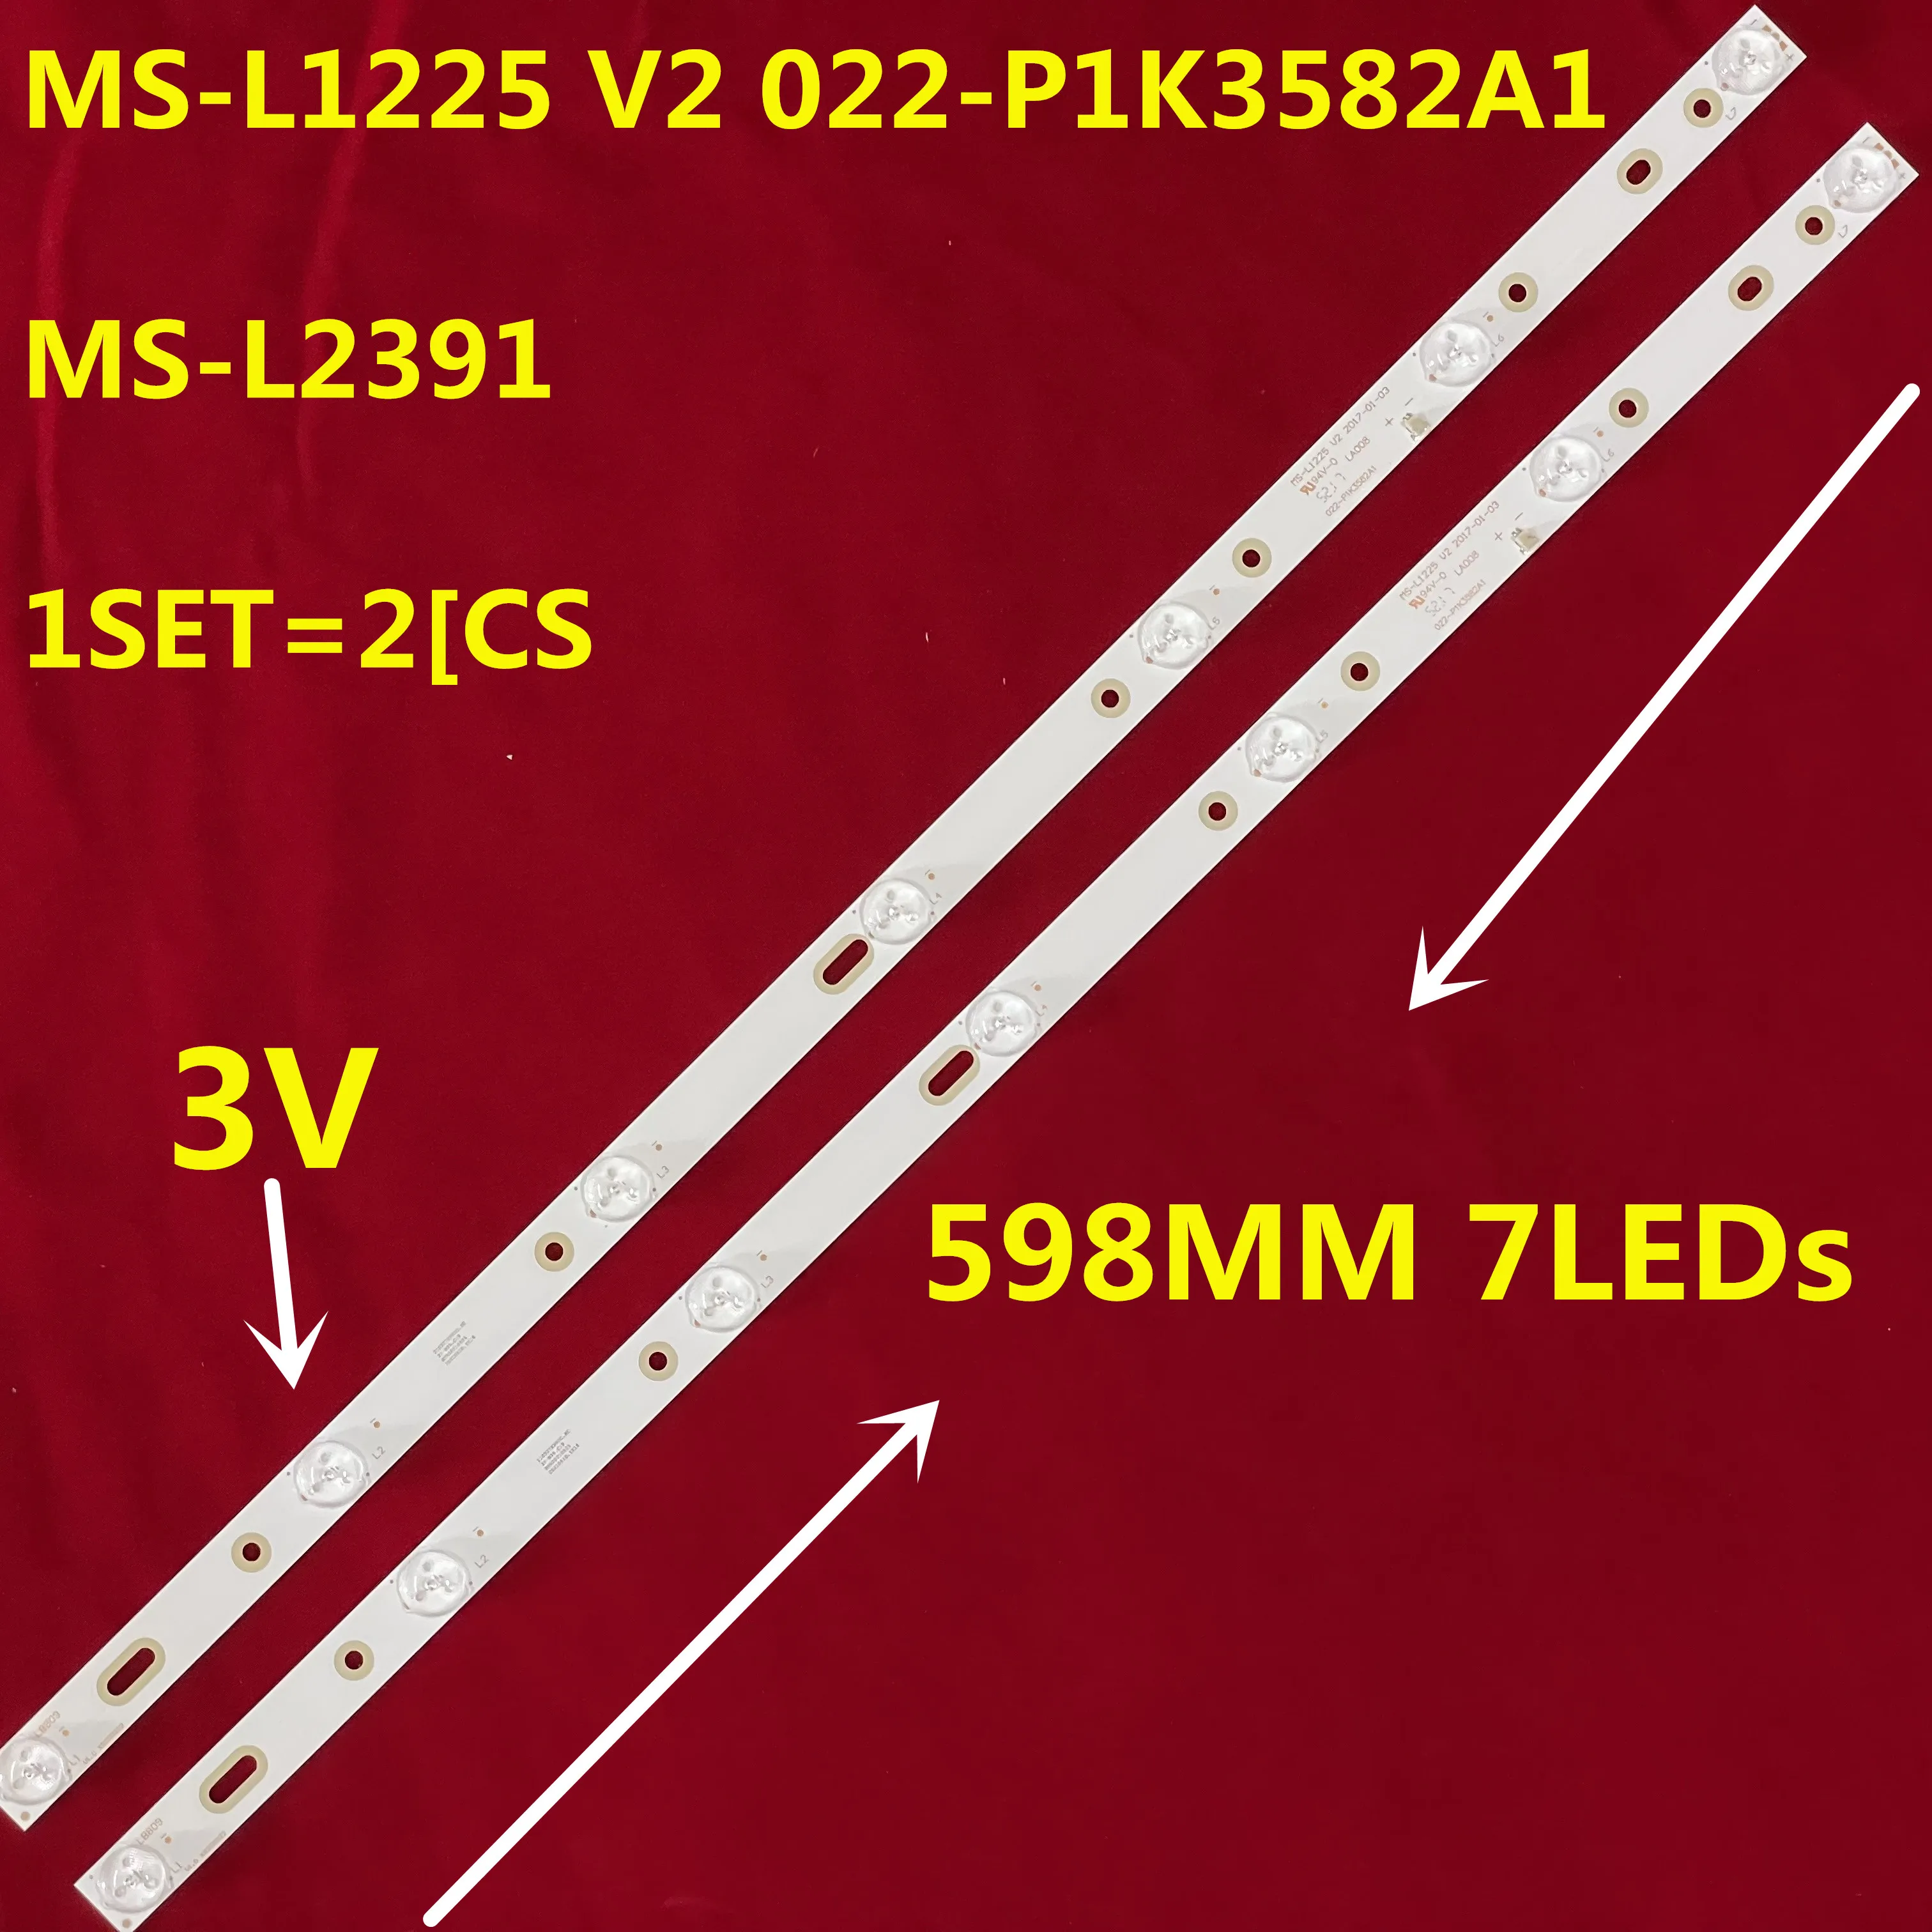 

30PCS LED Strip for TF-LED32S67T2 LE-3229N HL-00320A28-0701S-04 B0 180.DT0-32D900-0H CX315DLEDM 32LEM-1010/T2C 32LEX-5009